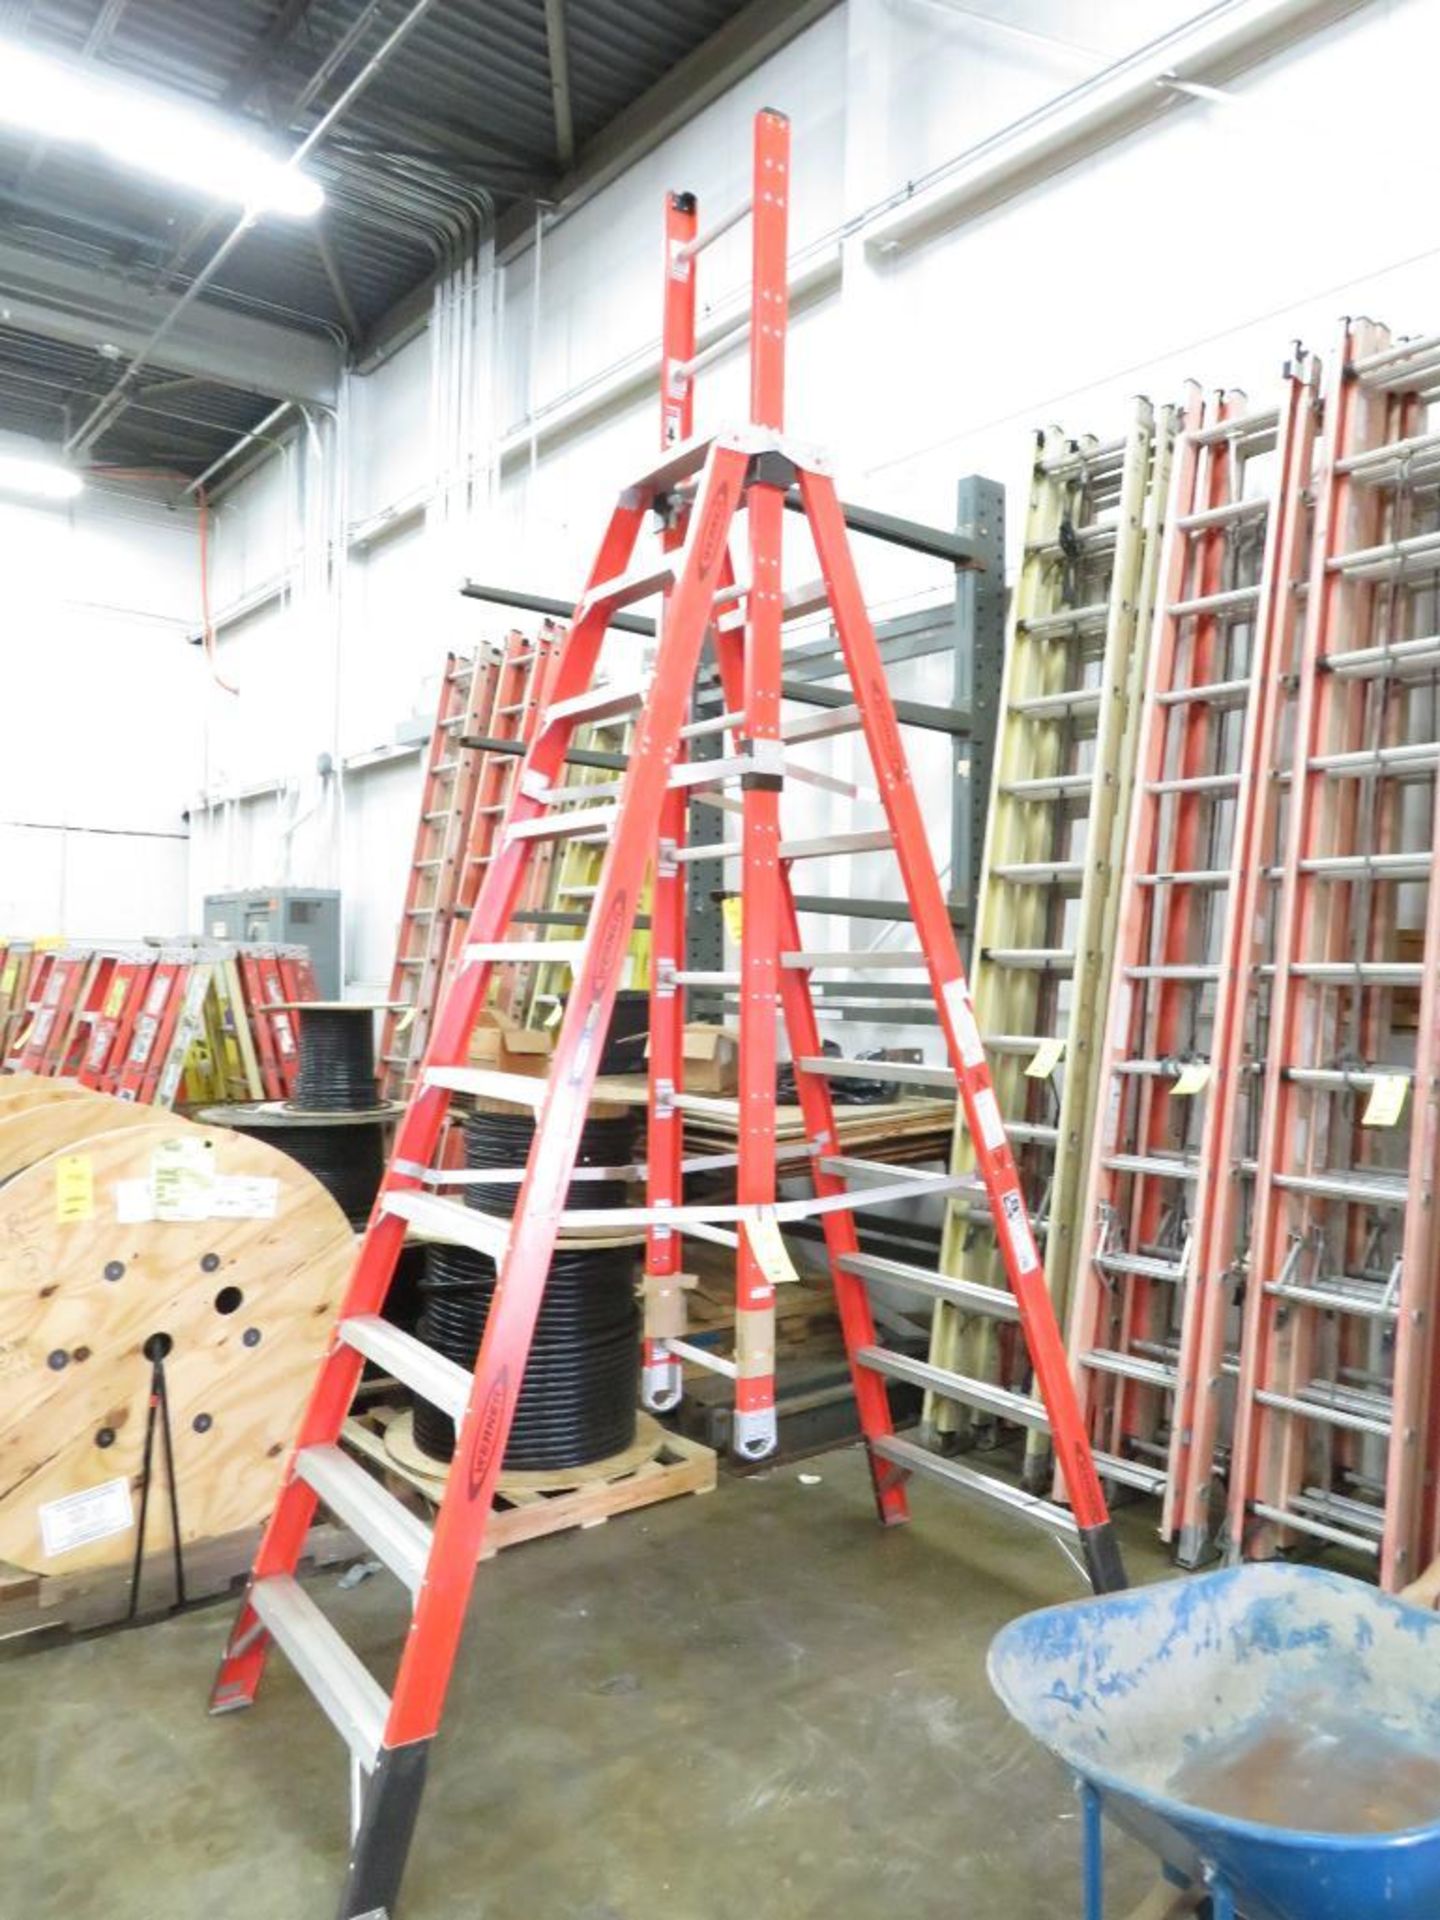 Werner Combo Ladder - 10 ft. A-Frame, 15 ft. Extension Ladder